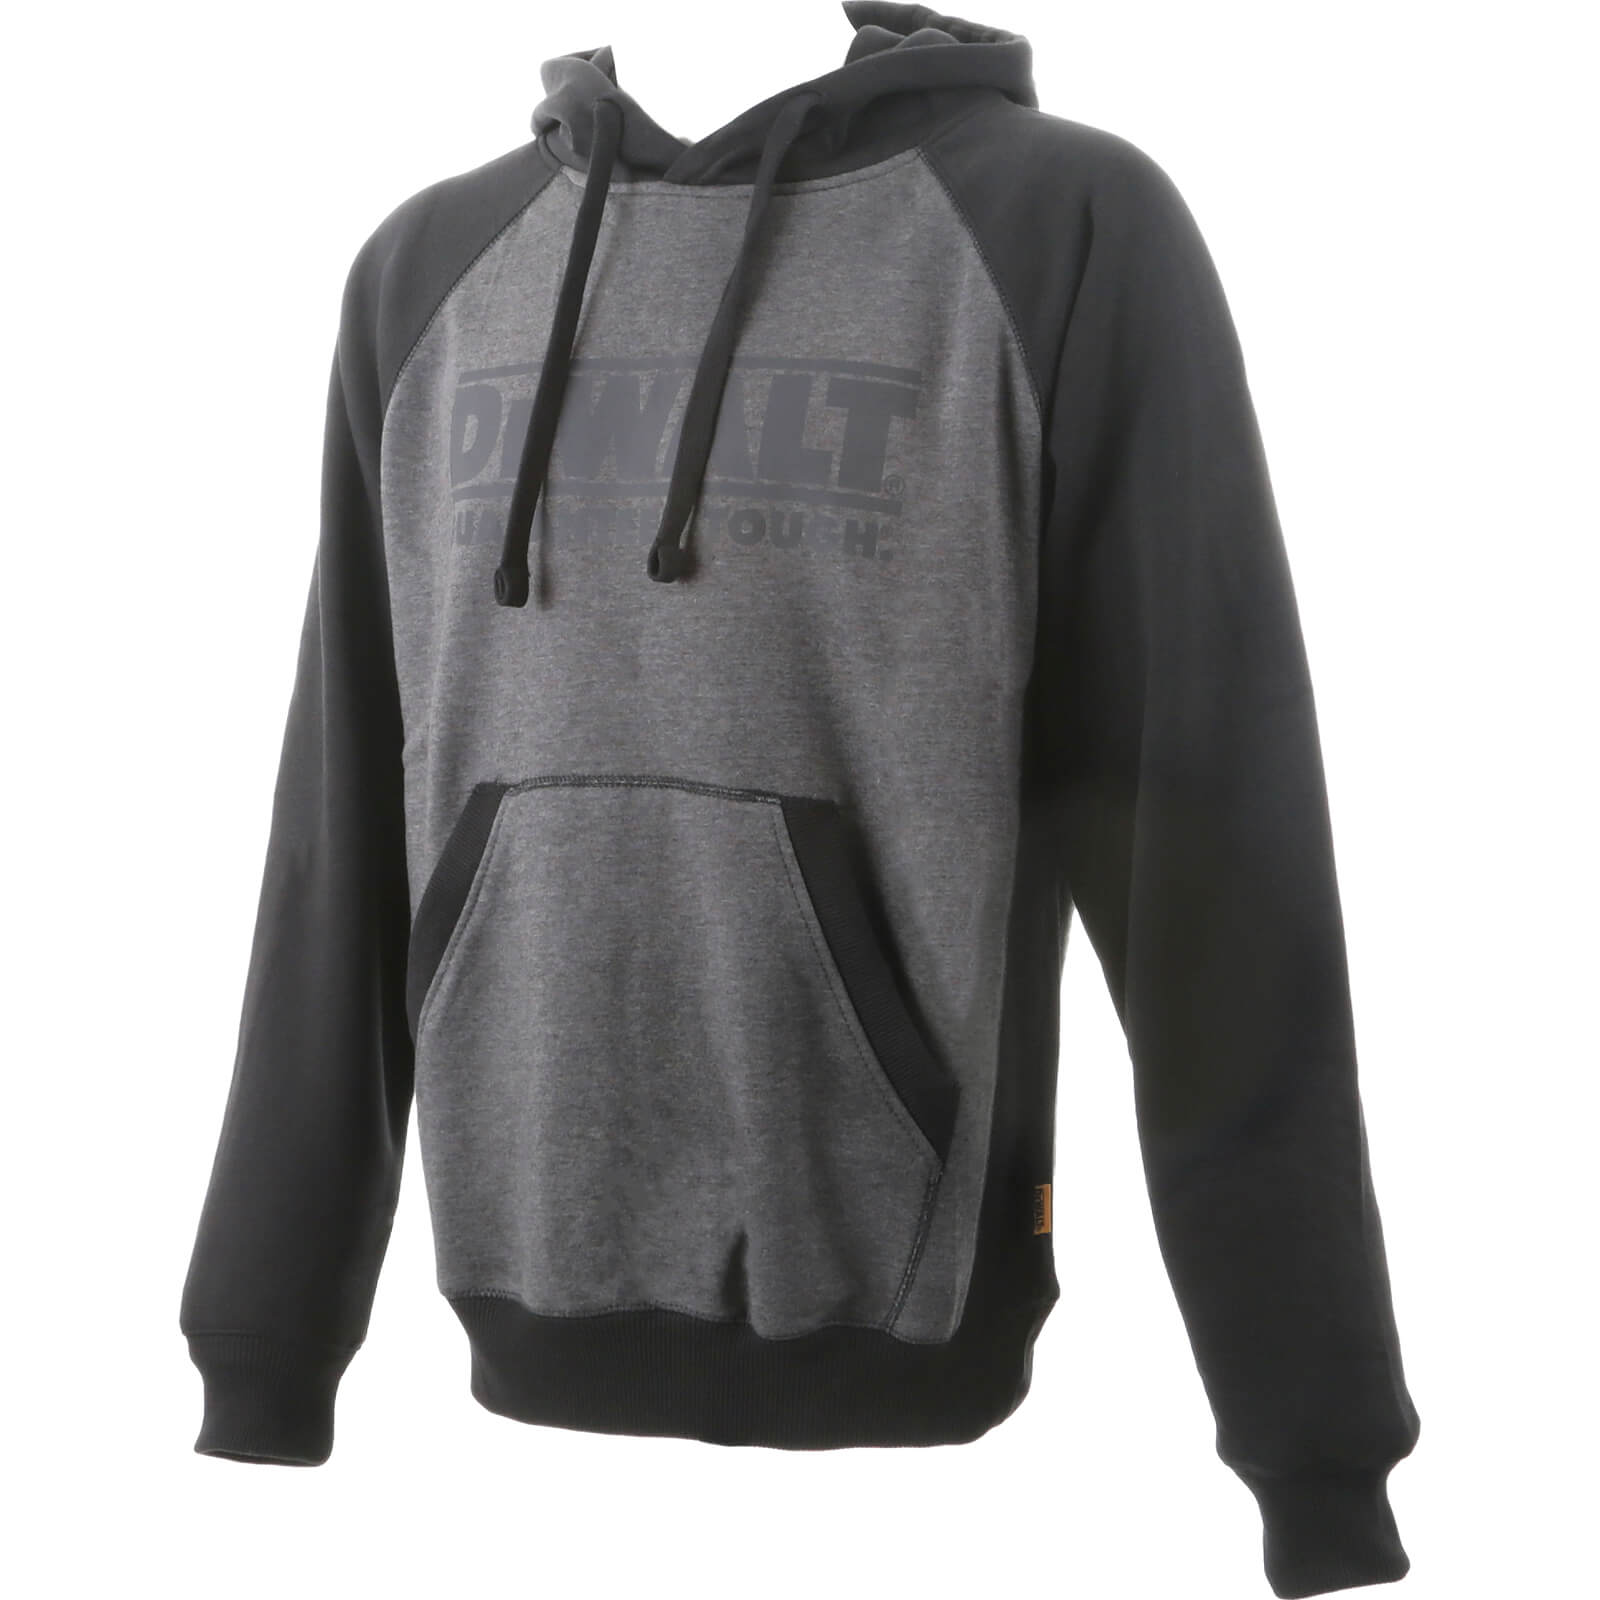 DeWalt Stratford Hoodie Sweatshirt Black / Grey L